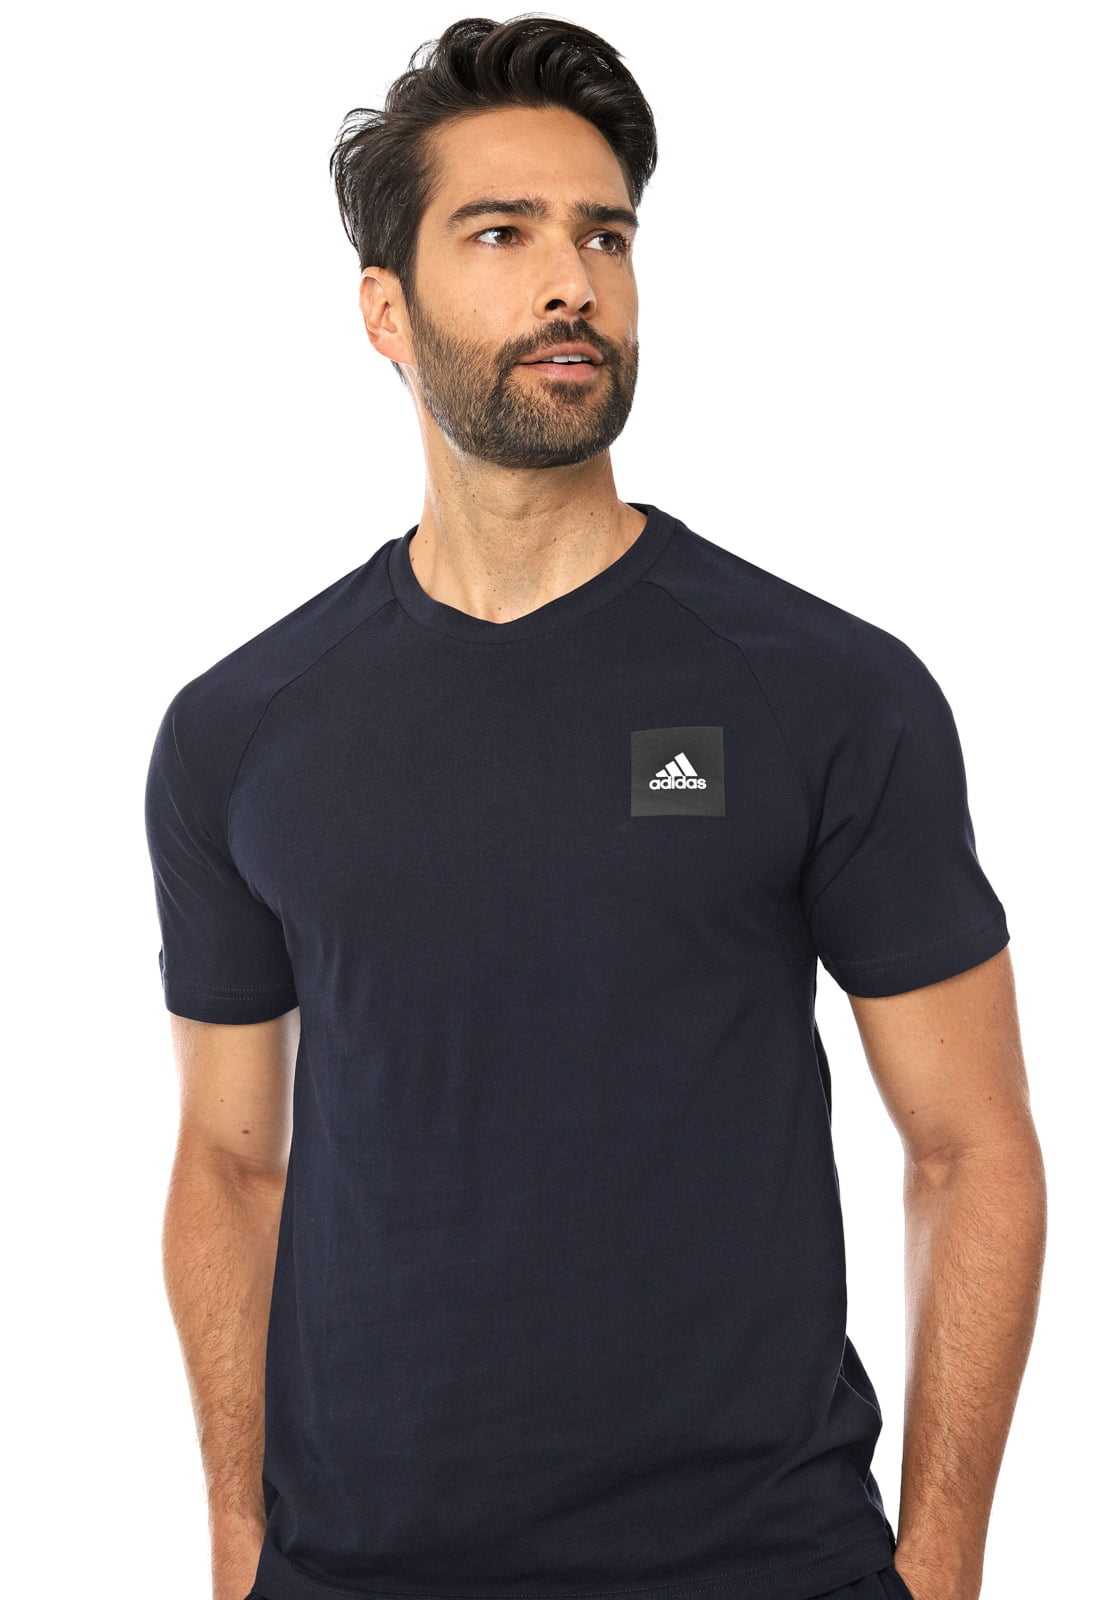 Camiseta Adidas FL4003 Clean 100% Algodão - Ideal para pessoas com alergia a outros tecidos